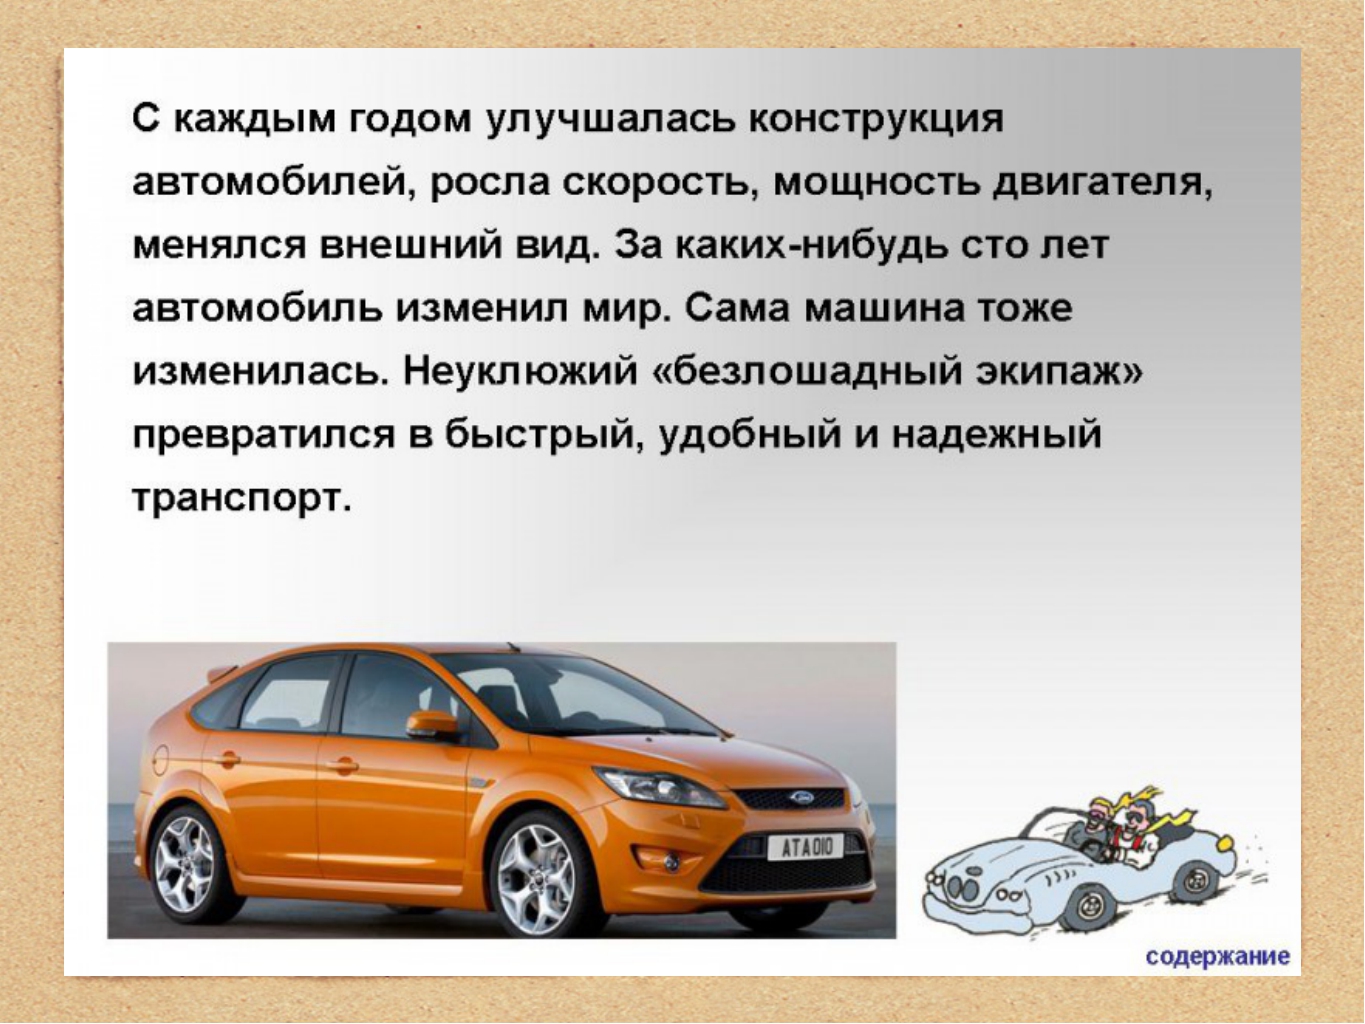 Доклад на тему автомобиль. Описание автомобиля. Презентация на тему машины. Машина для презентации. Доклад про автомобиль.